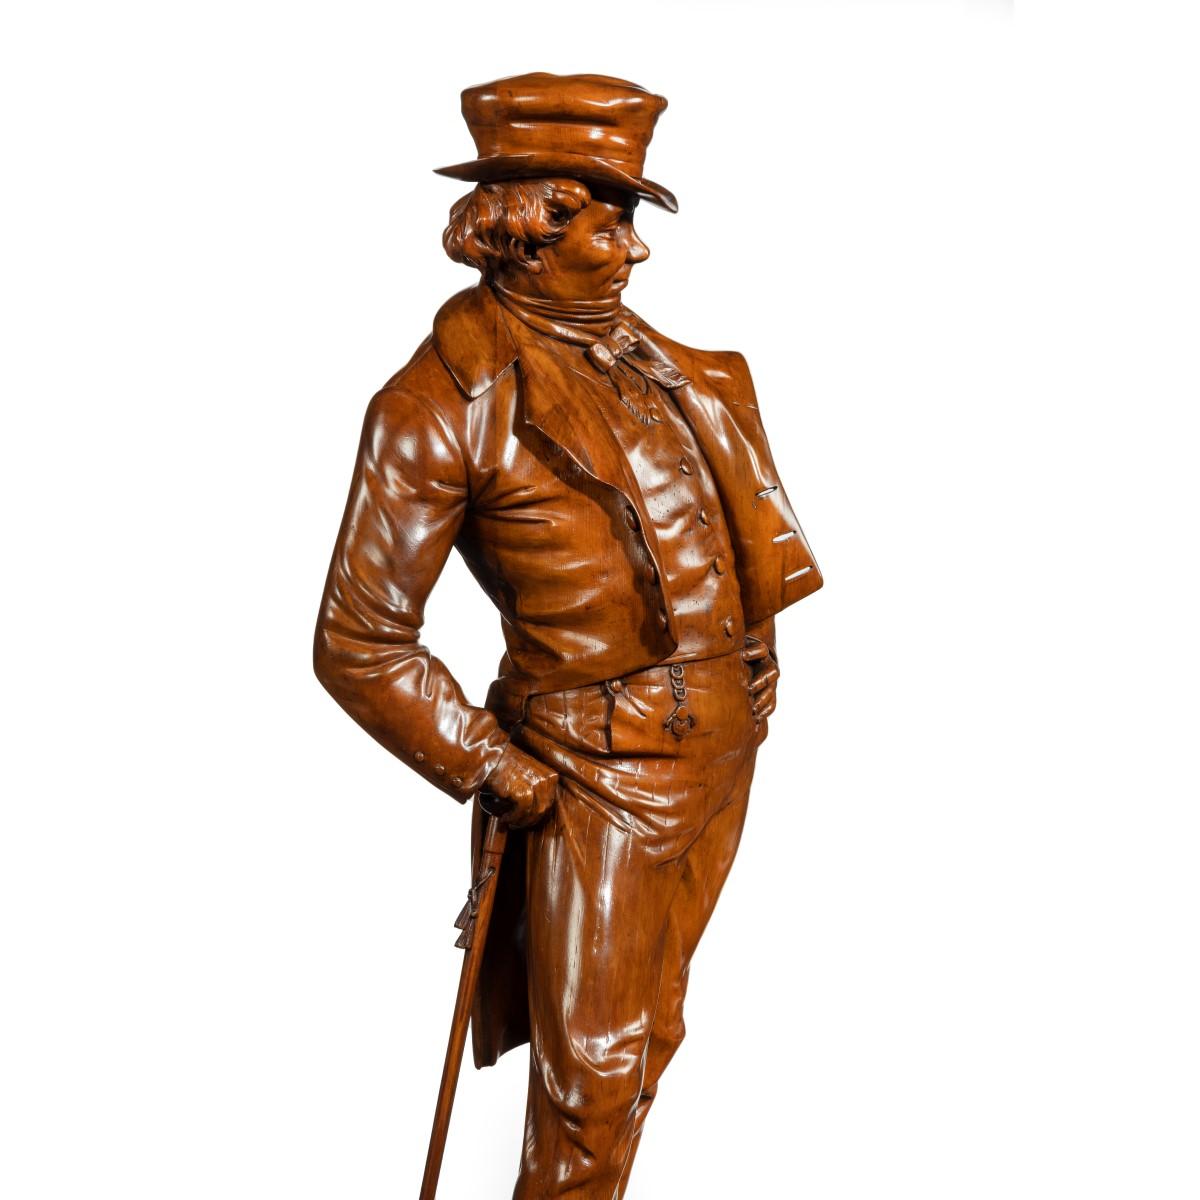 Eine viktorianische geschnitzte Nussbaumfigur eines modischen Gentleman, der einen weichen Zylinder, einen Frack und eine geknöpfte Weste trägt. Er nimmt eine lässige Pose ein, stützt sich mit einer Hand auf die Hüfte und stützt sich auf seinen mit